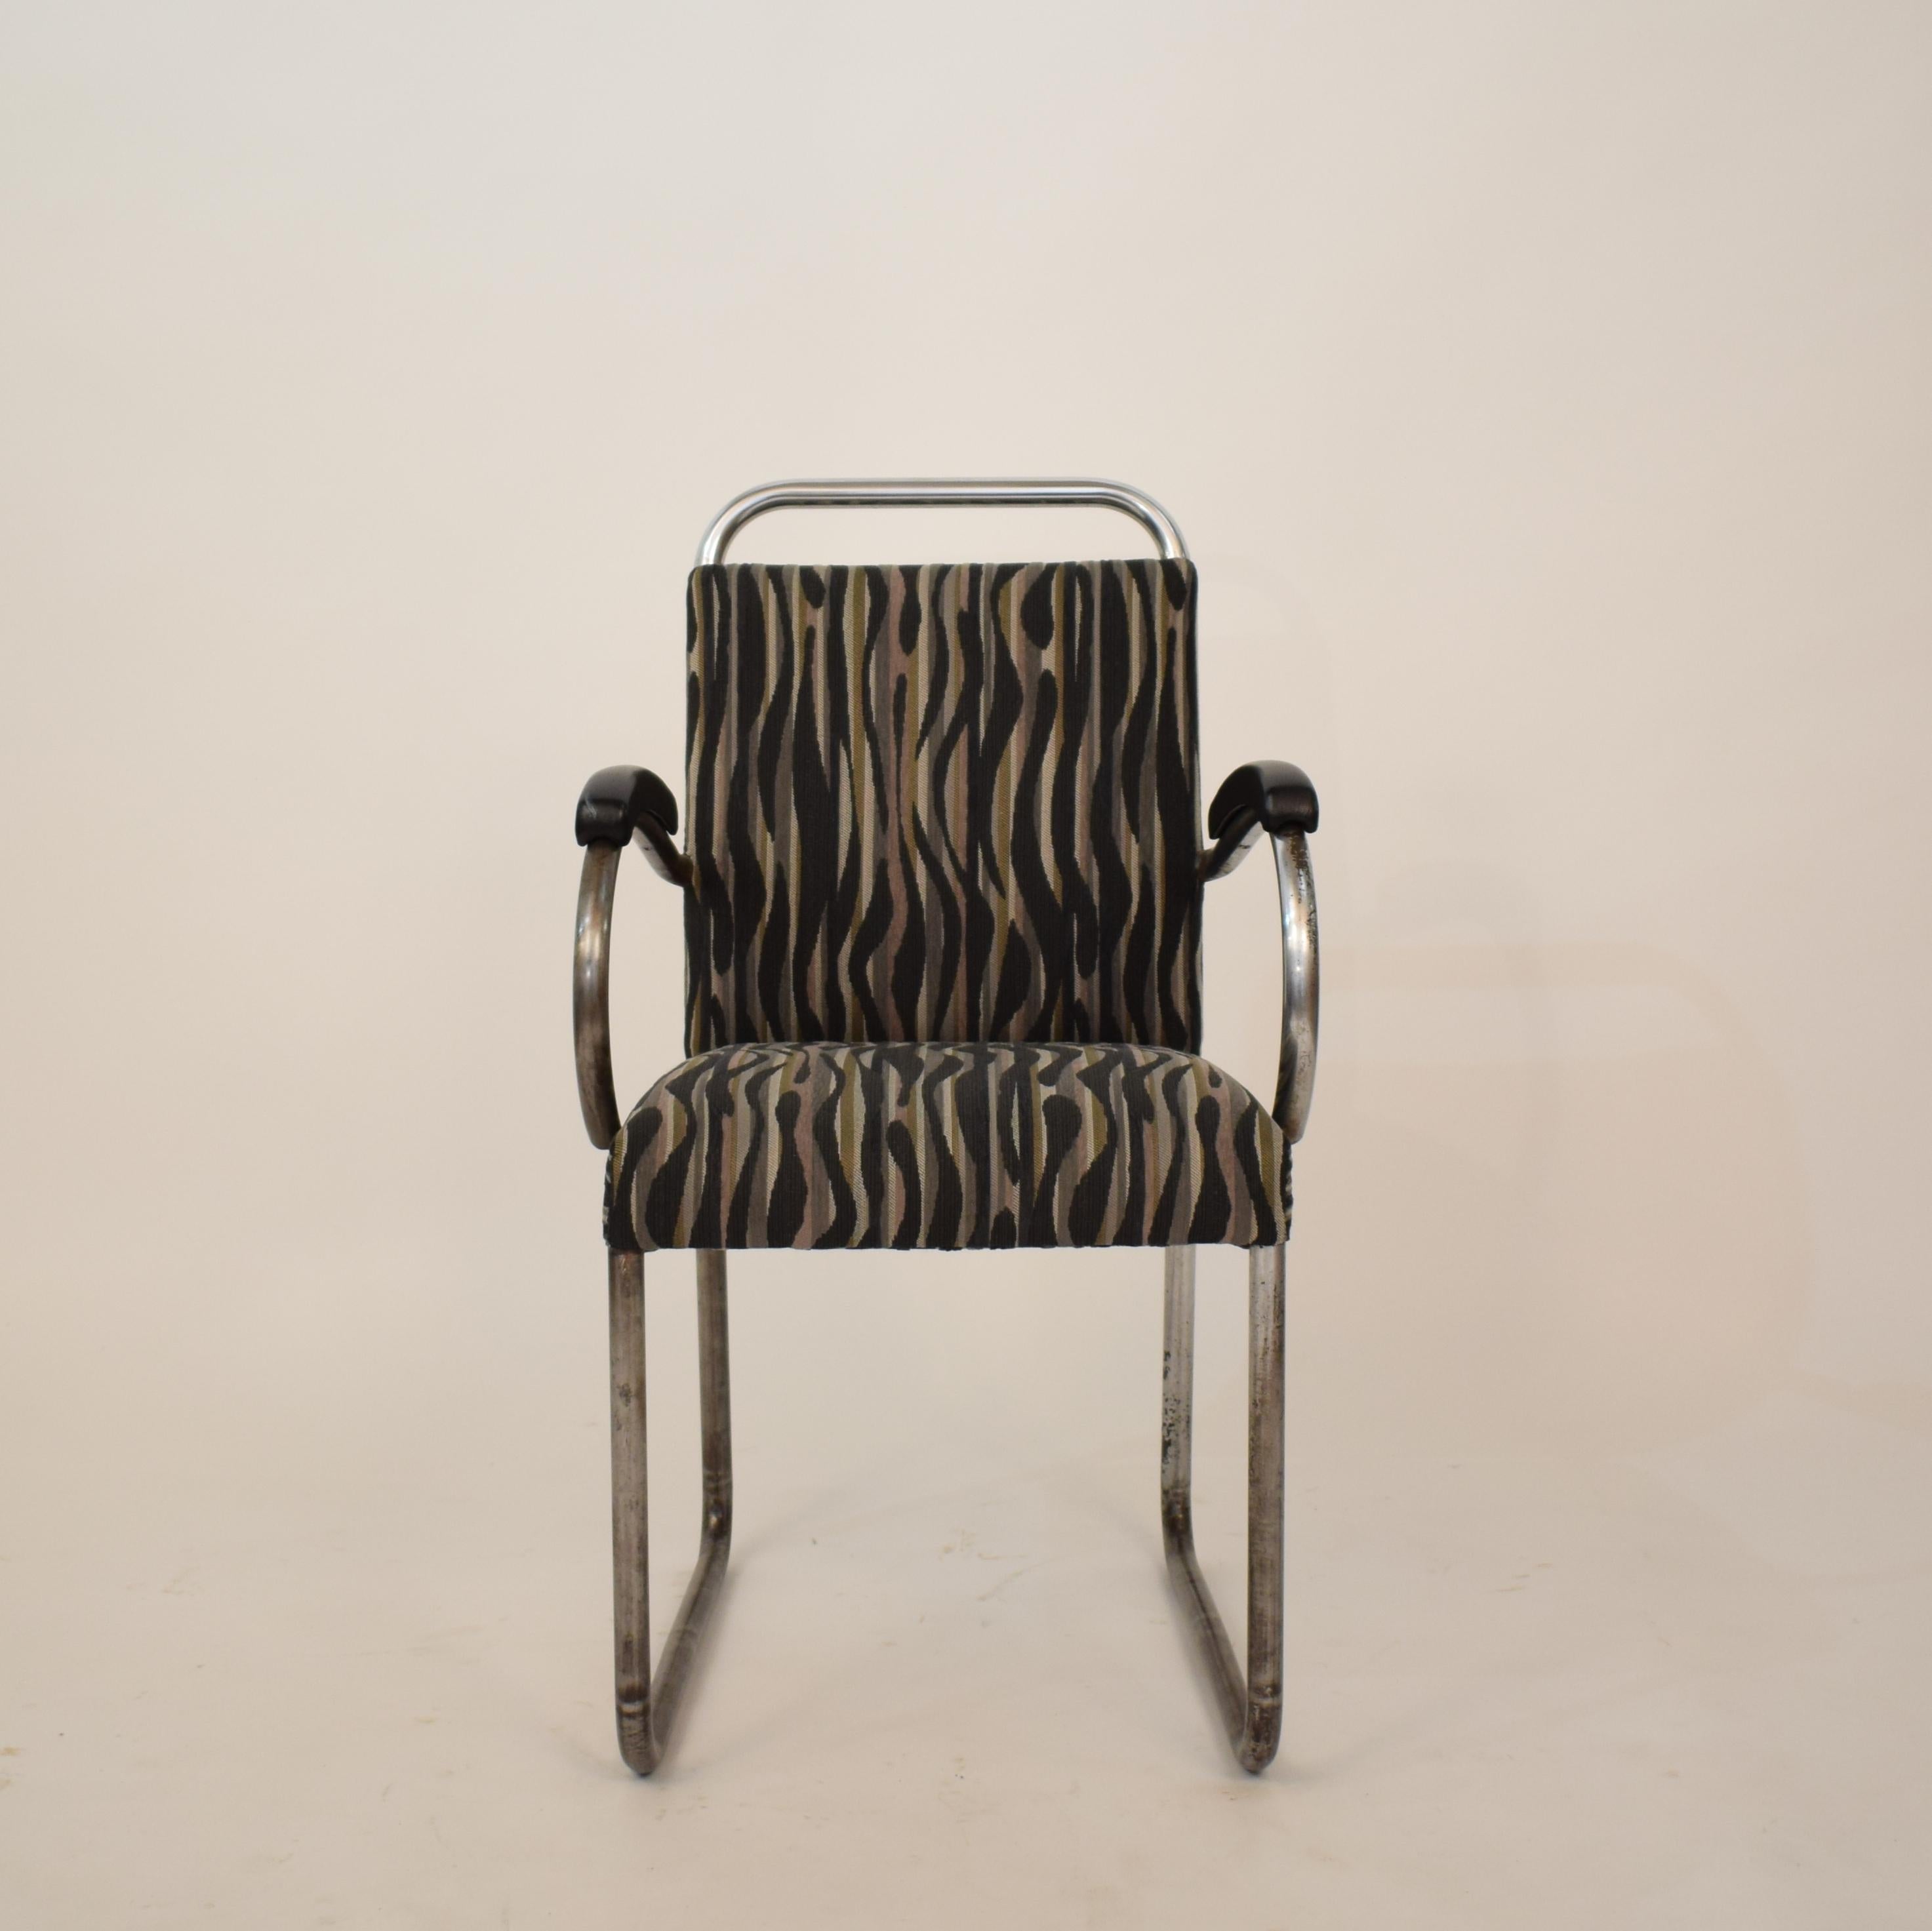 Ce très rare fauteuil luge en acier tubulaire de style Art déco allemand a été fabriqué vers 1925.
Il a été chromé. Le chrome se décolle à certains endroits mais donne à la chaise un aspect et une patine remarquables.
La chaise est retapissée en